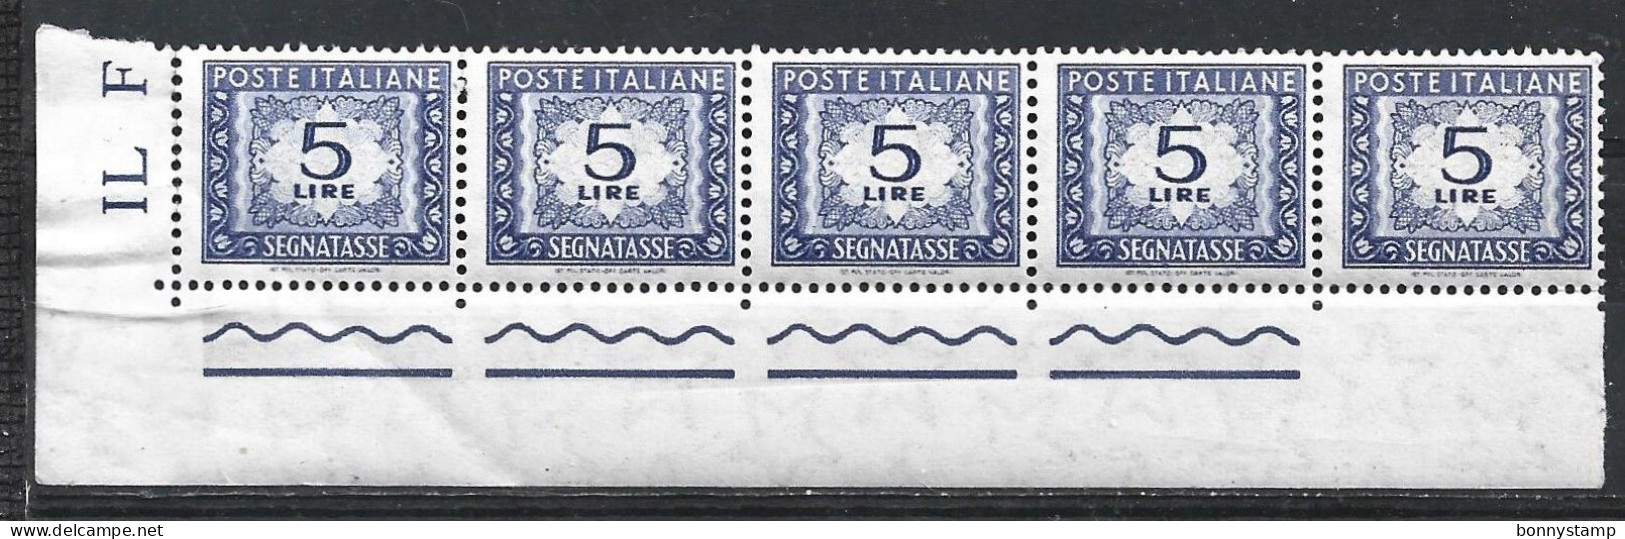 Repubblica Italiana, 1955/66 - 5 Lire Segnatasse, Fil. Stelle, Blocco Di 5 - Nr.111 MNH** - Portomarken